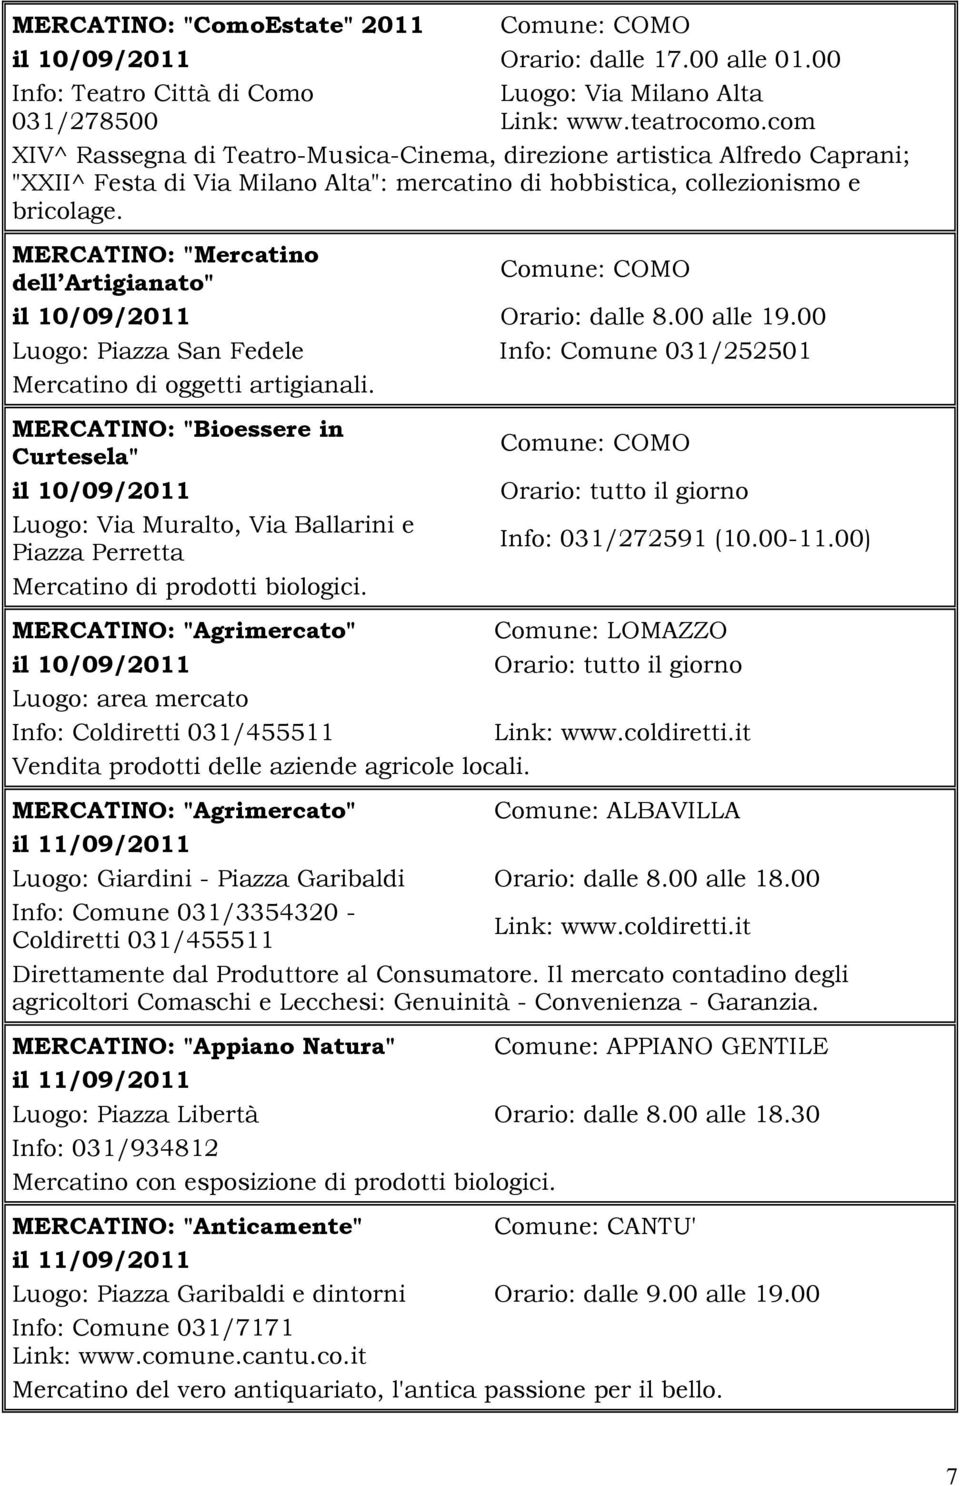 MERCATINO: "Mercatino dell Artigianato" il 10/09/2011 Orario: dalle 8.00 alle 19.00 Luogo: Piazza San Fedele Info: Comune 031/252501 Mercatino di oggetti artigianali.